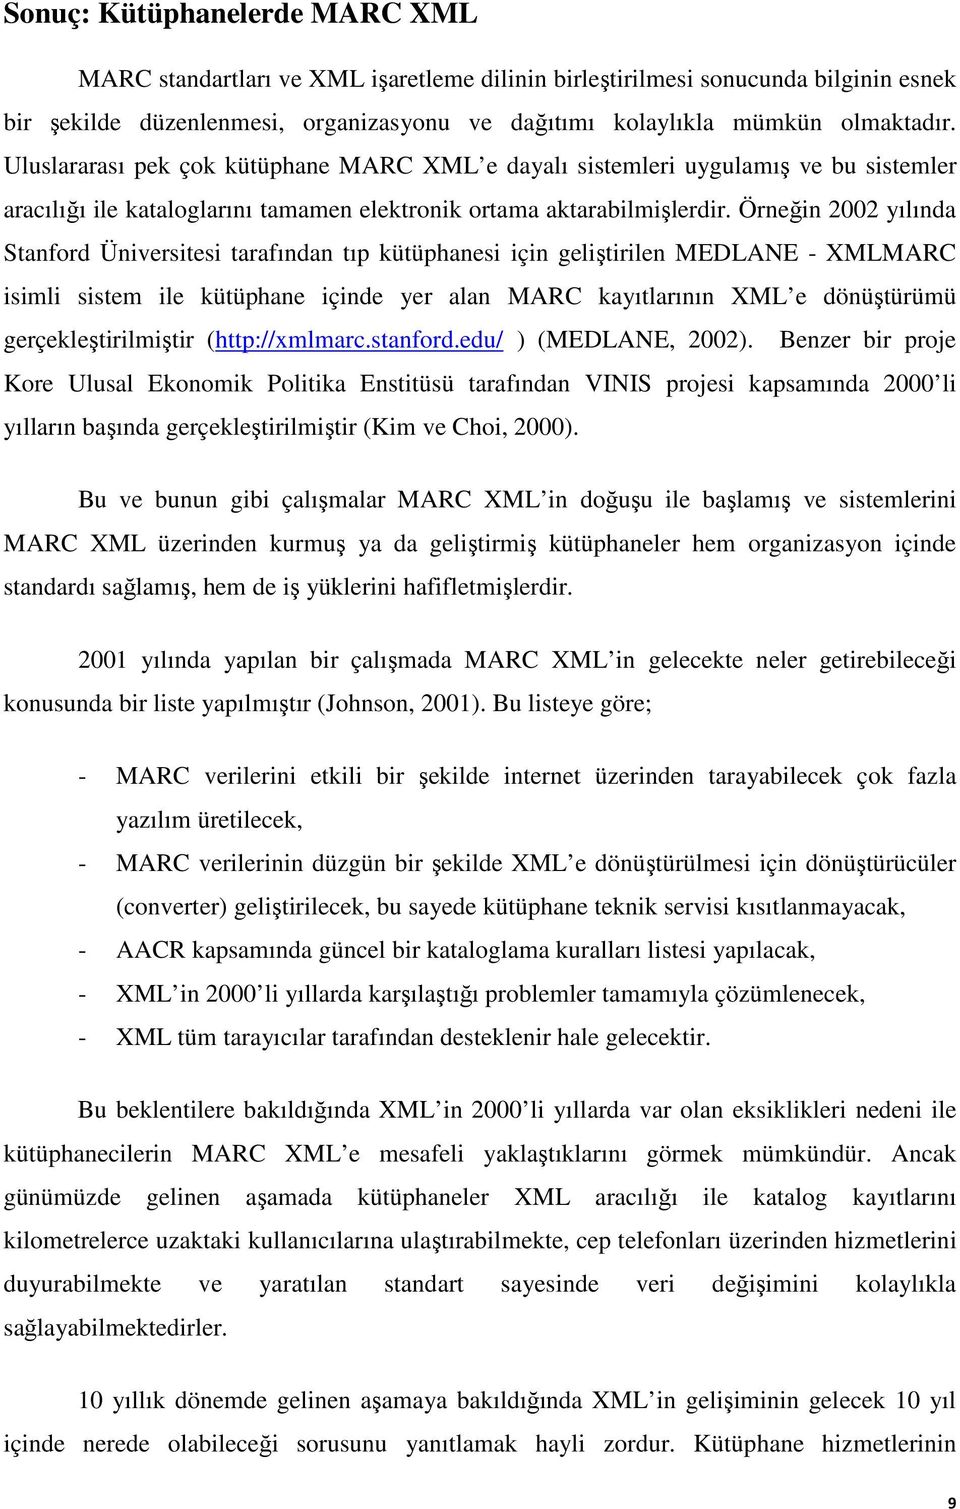 Örneğin 2002 yılında Stanford Üniversitesi tarafından tıp kütüphanesi için geliştirilen MEDLANE - XMLMARC isimli sistem ile kütüphane içinde yer alan MARC kayıtlarının XML e dönüştürümü